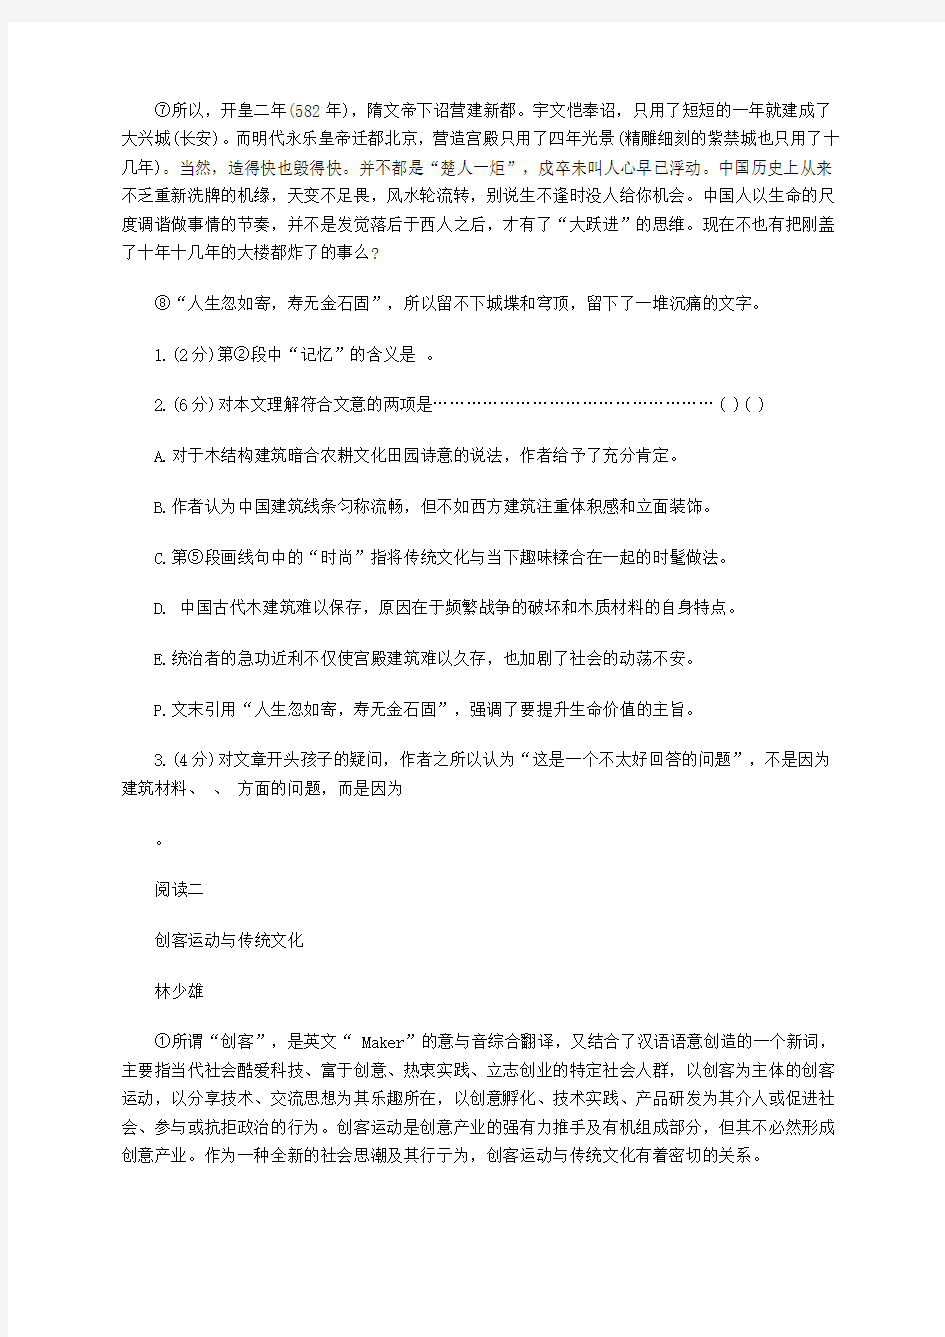 2019年上海高考语文模拟试题及答案